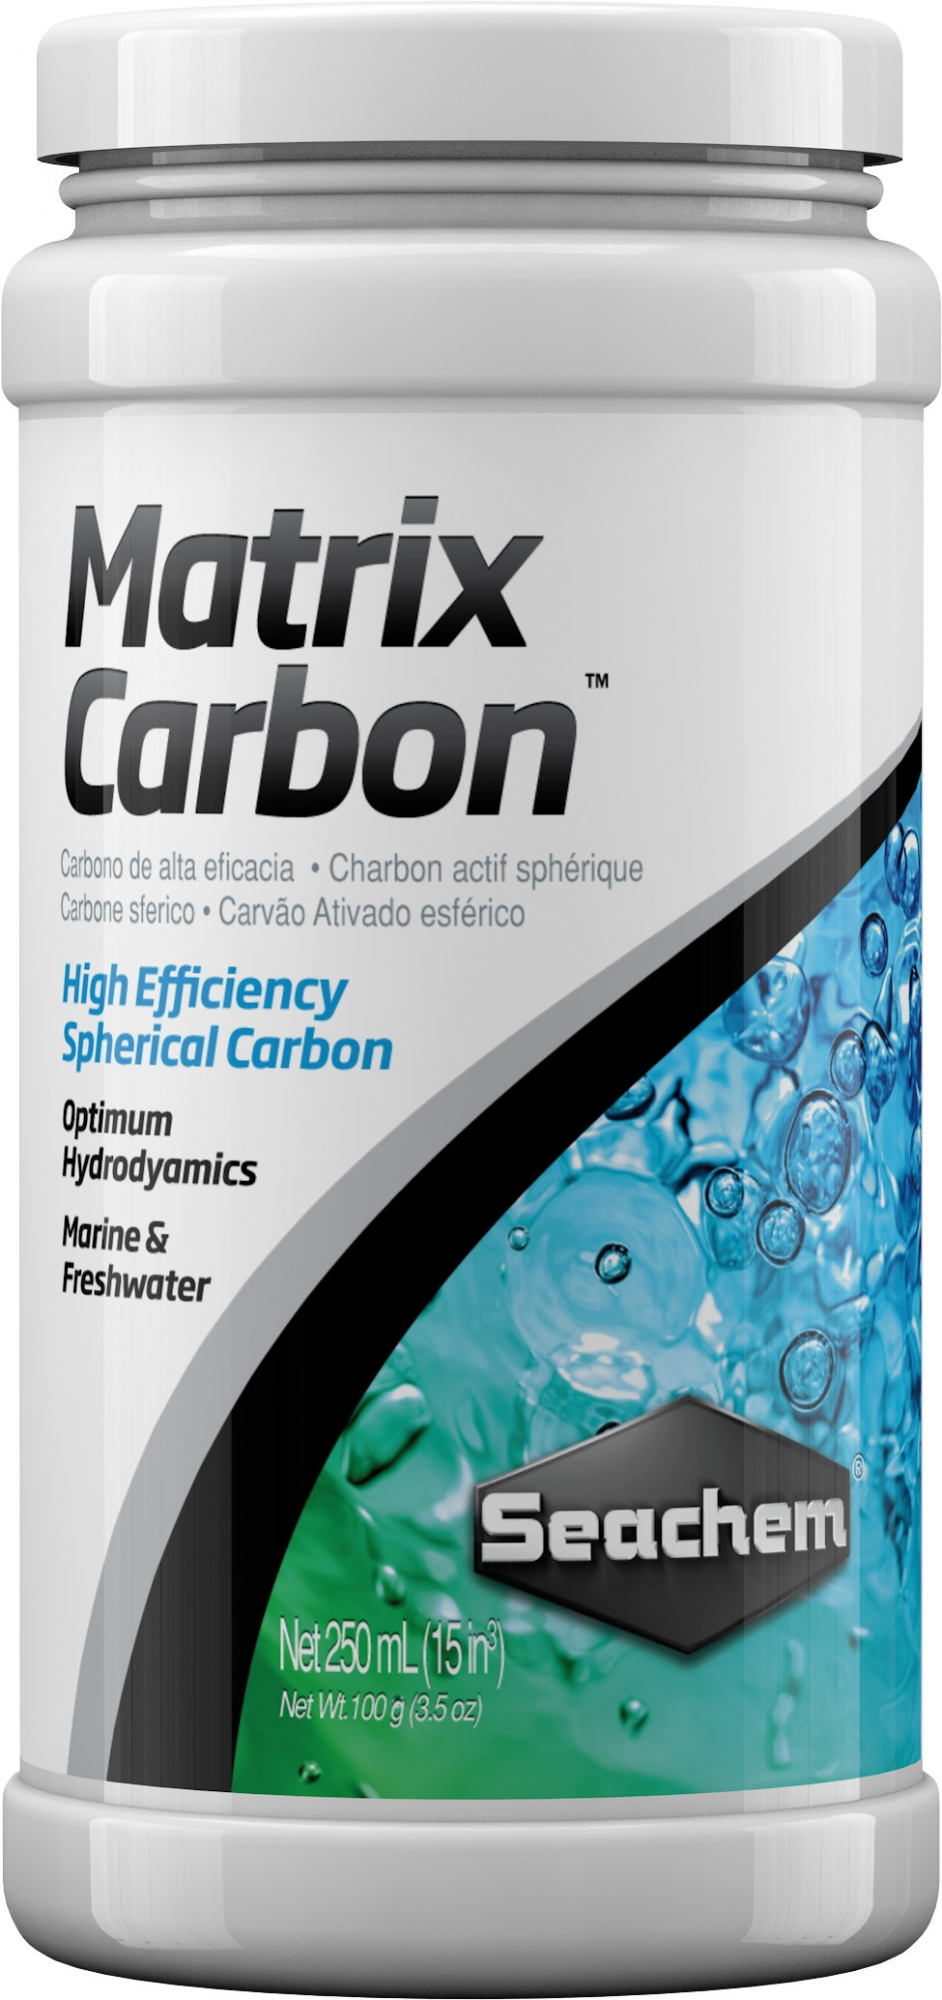 Matrix Carbon carvão activo de alta qualidade